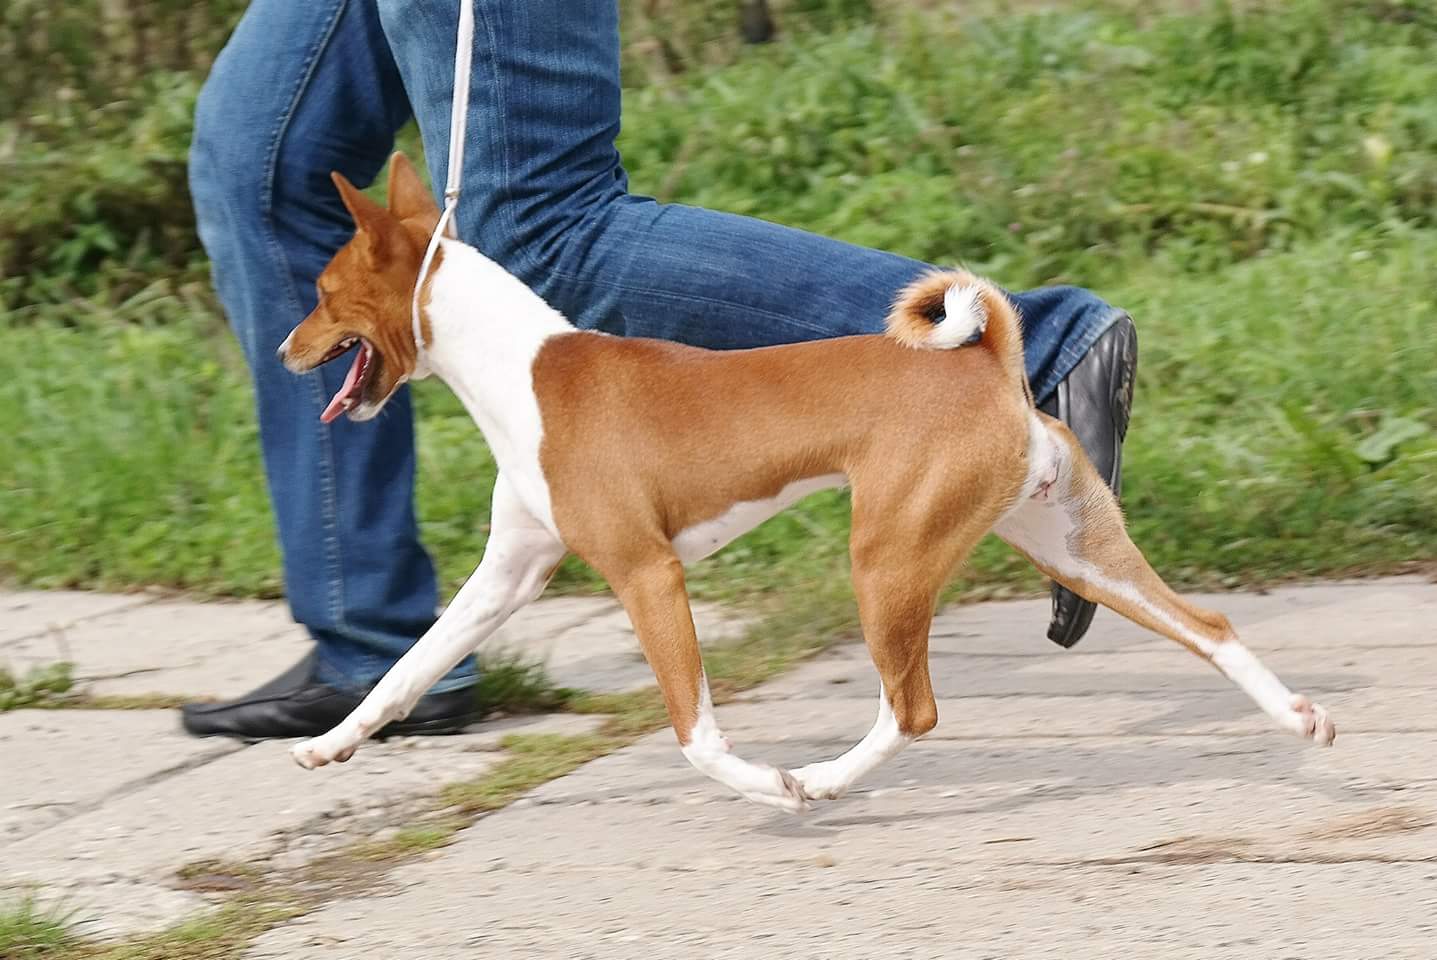 Собака басенджи – особенности, характер, окрасы, плюсы и минусы питомца, полезные советы владельцам